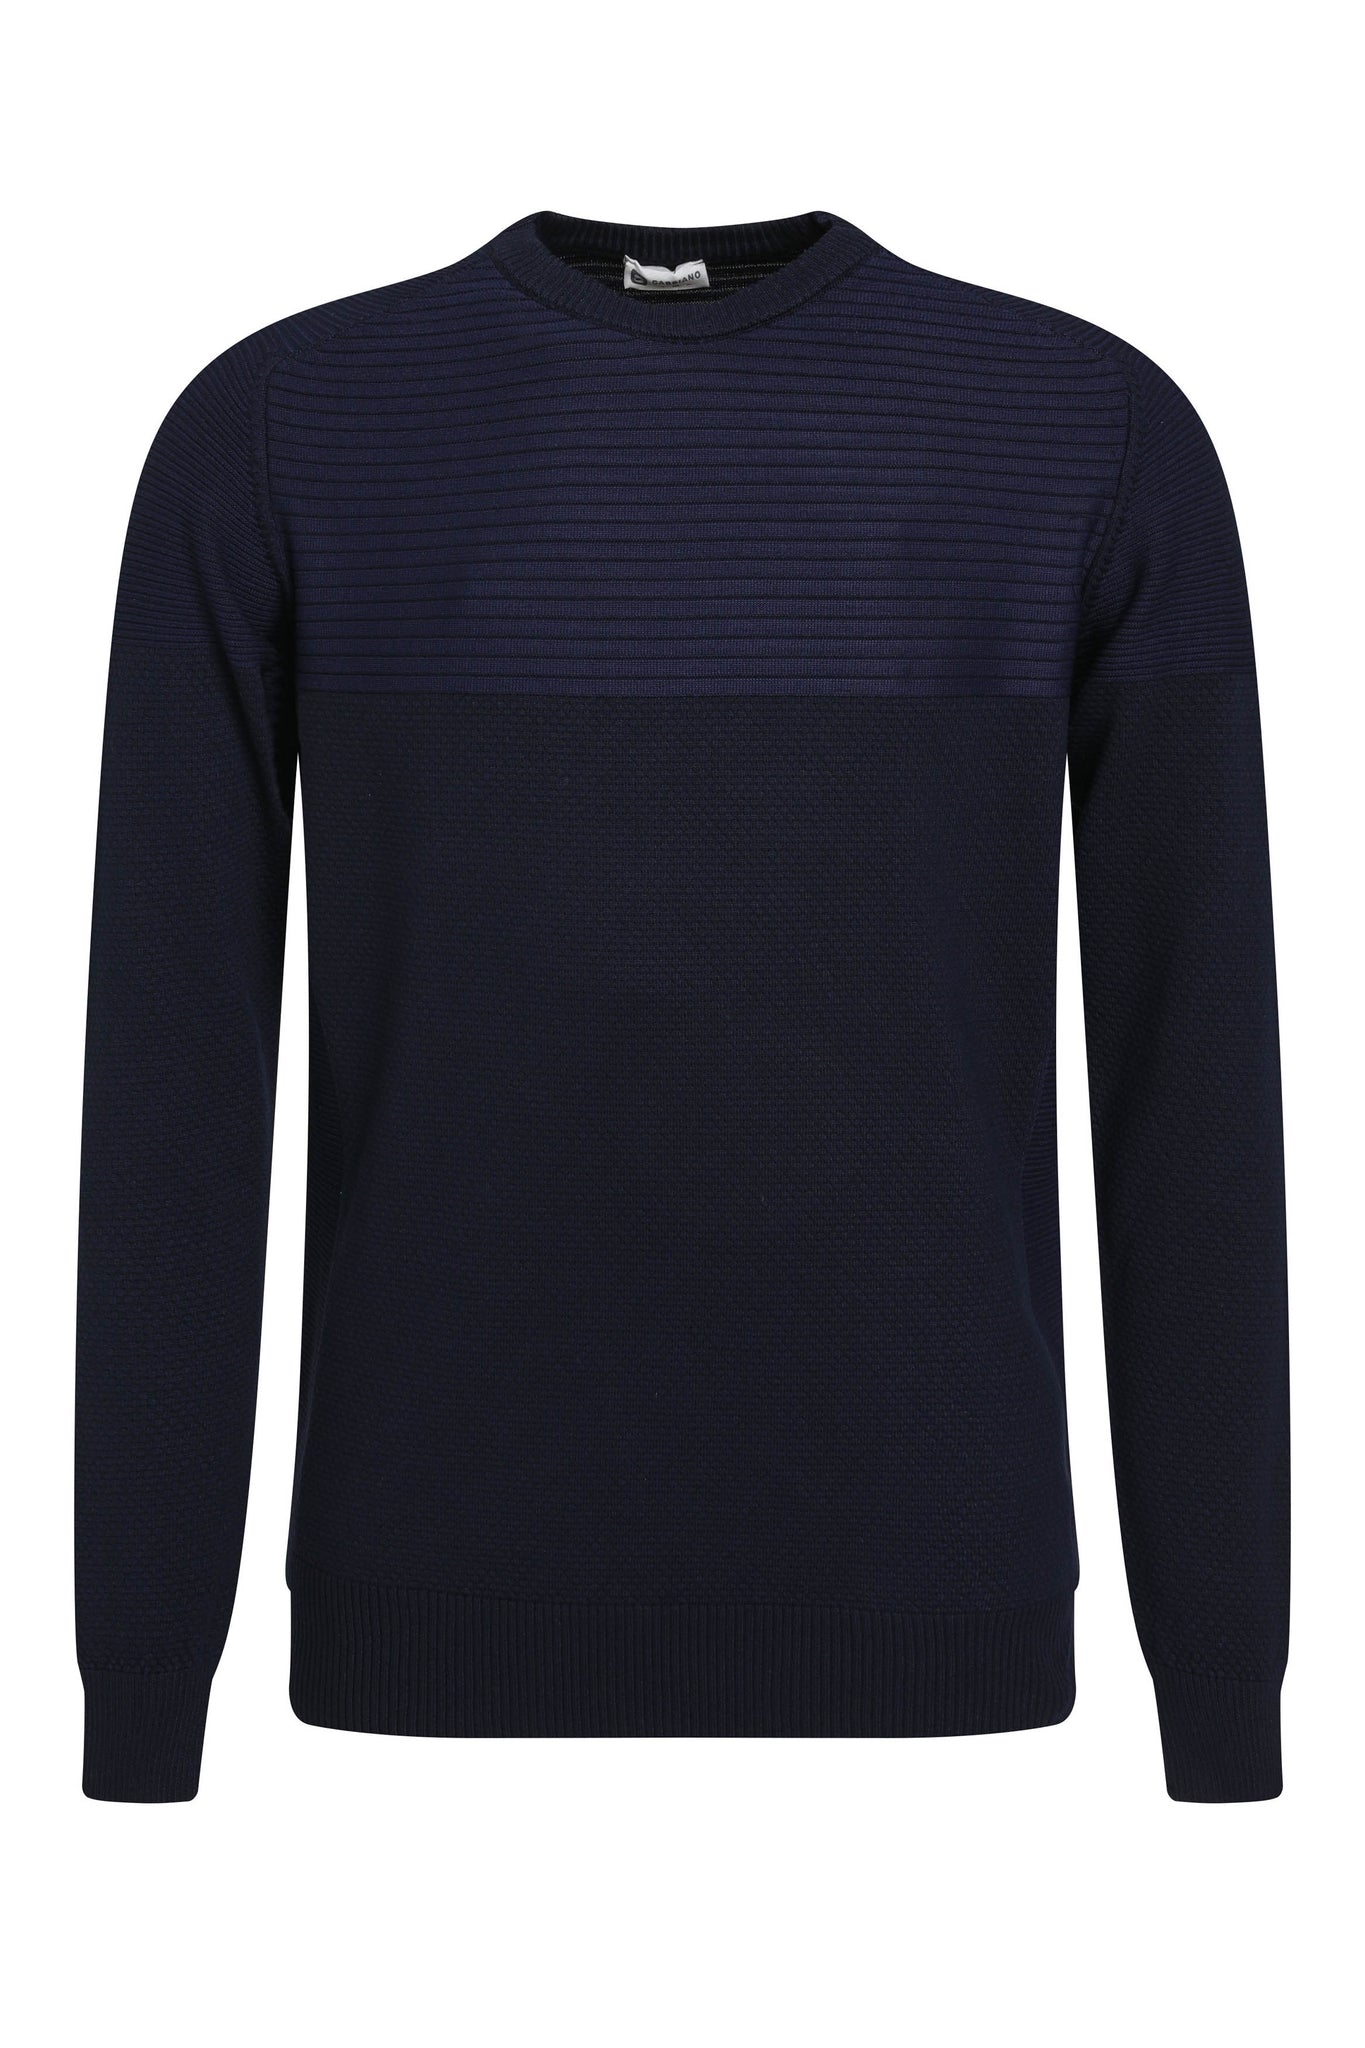 Dunne knit trui met ronde kraag | Navy